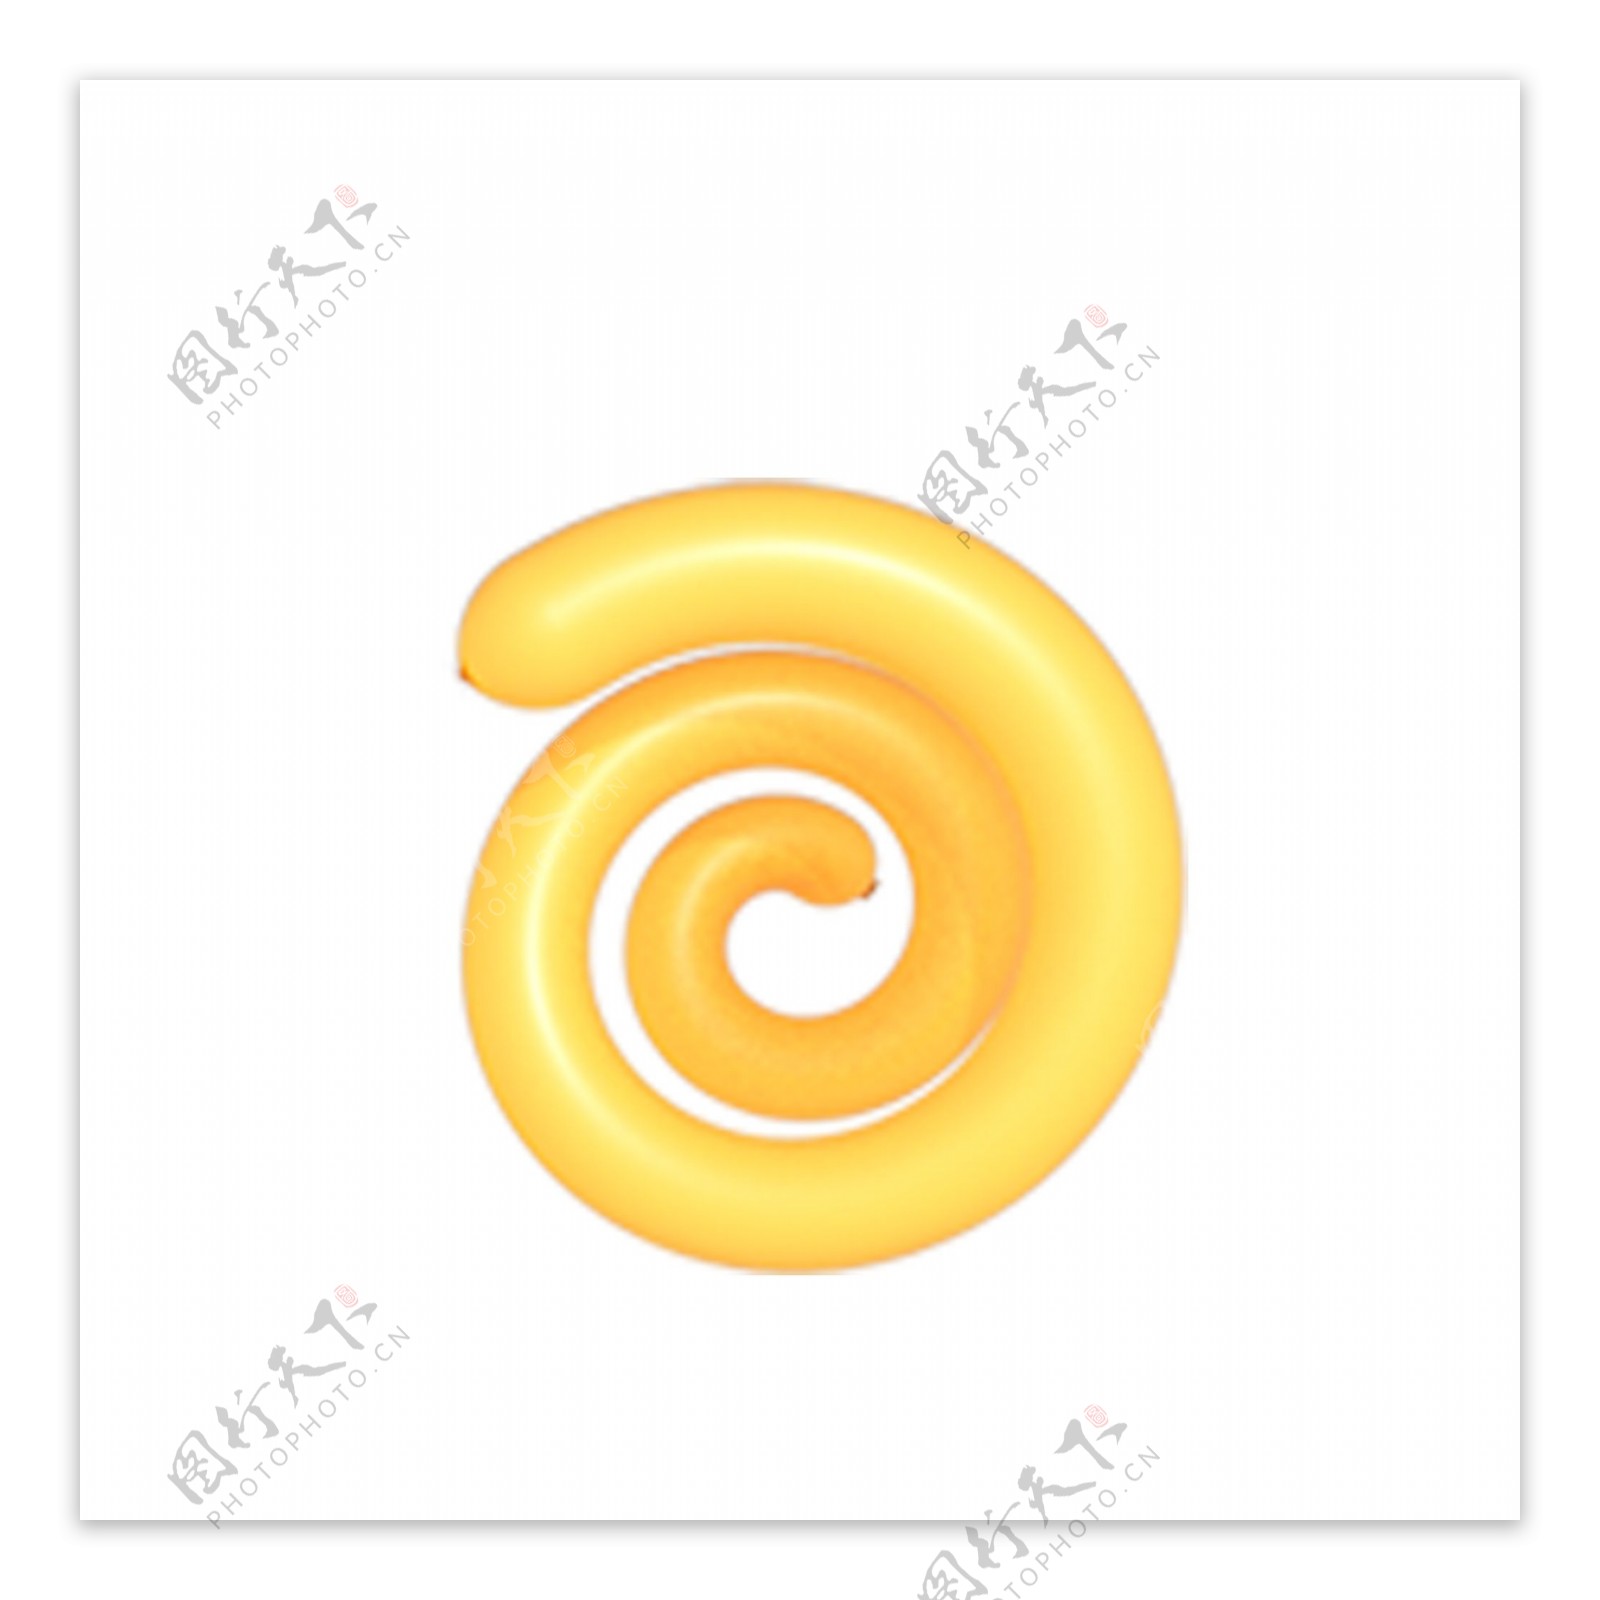 黄色的螺旋形状免抠图